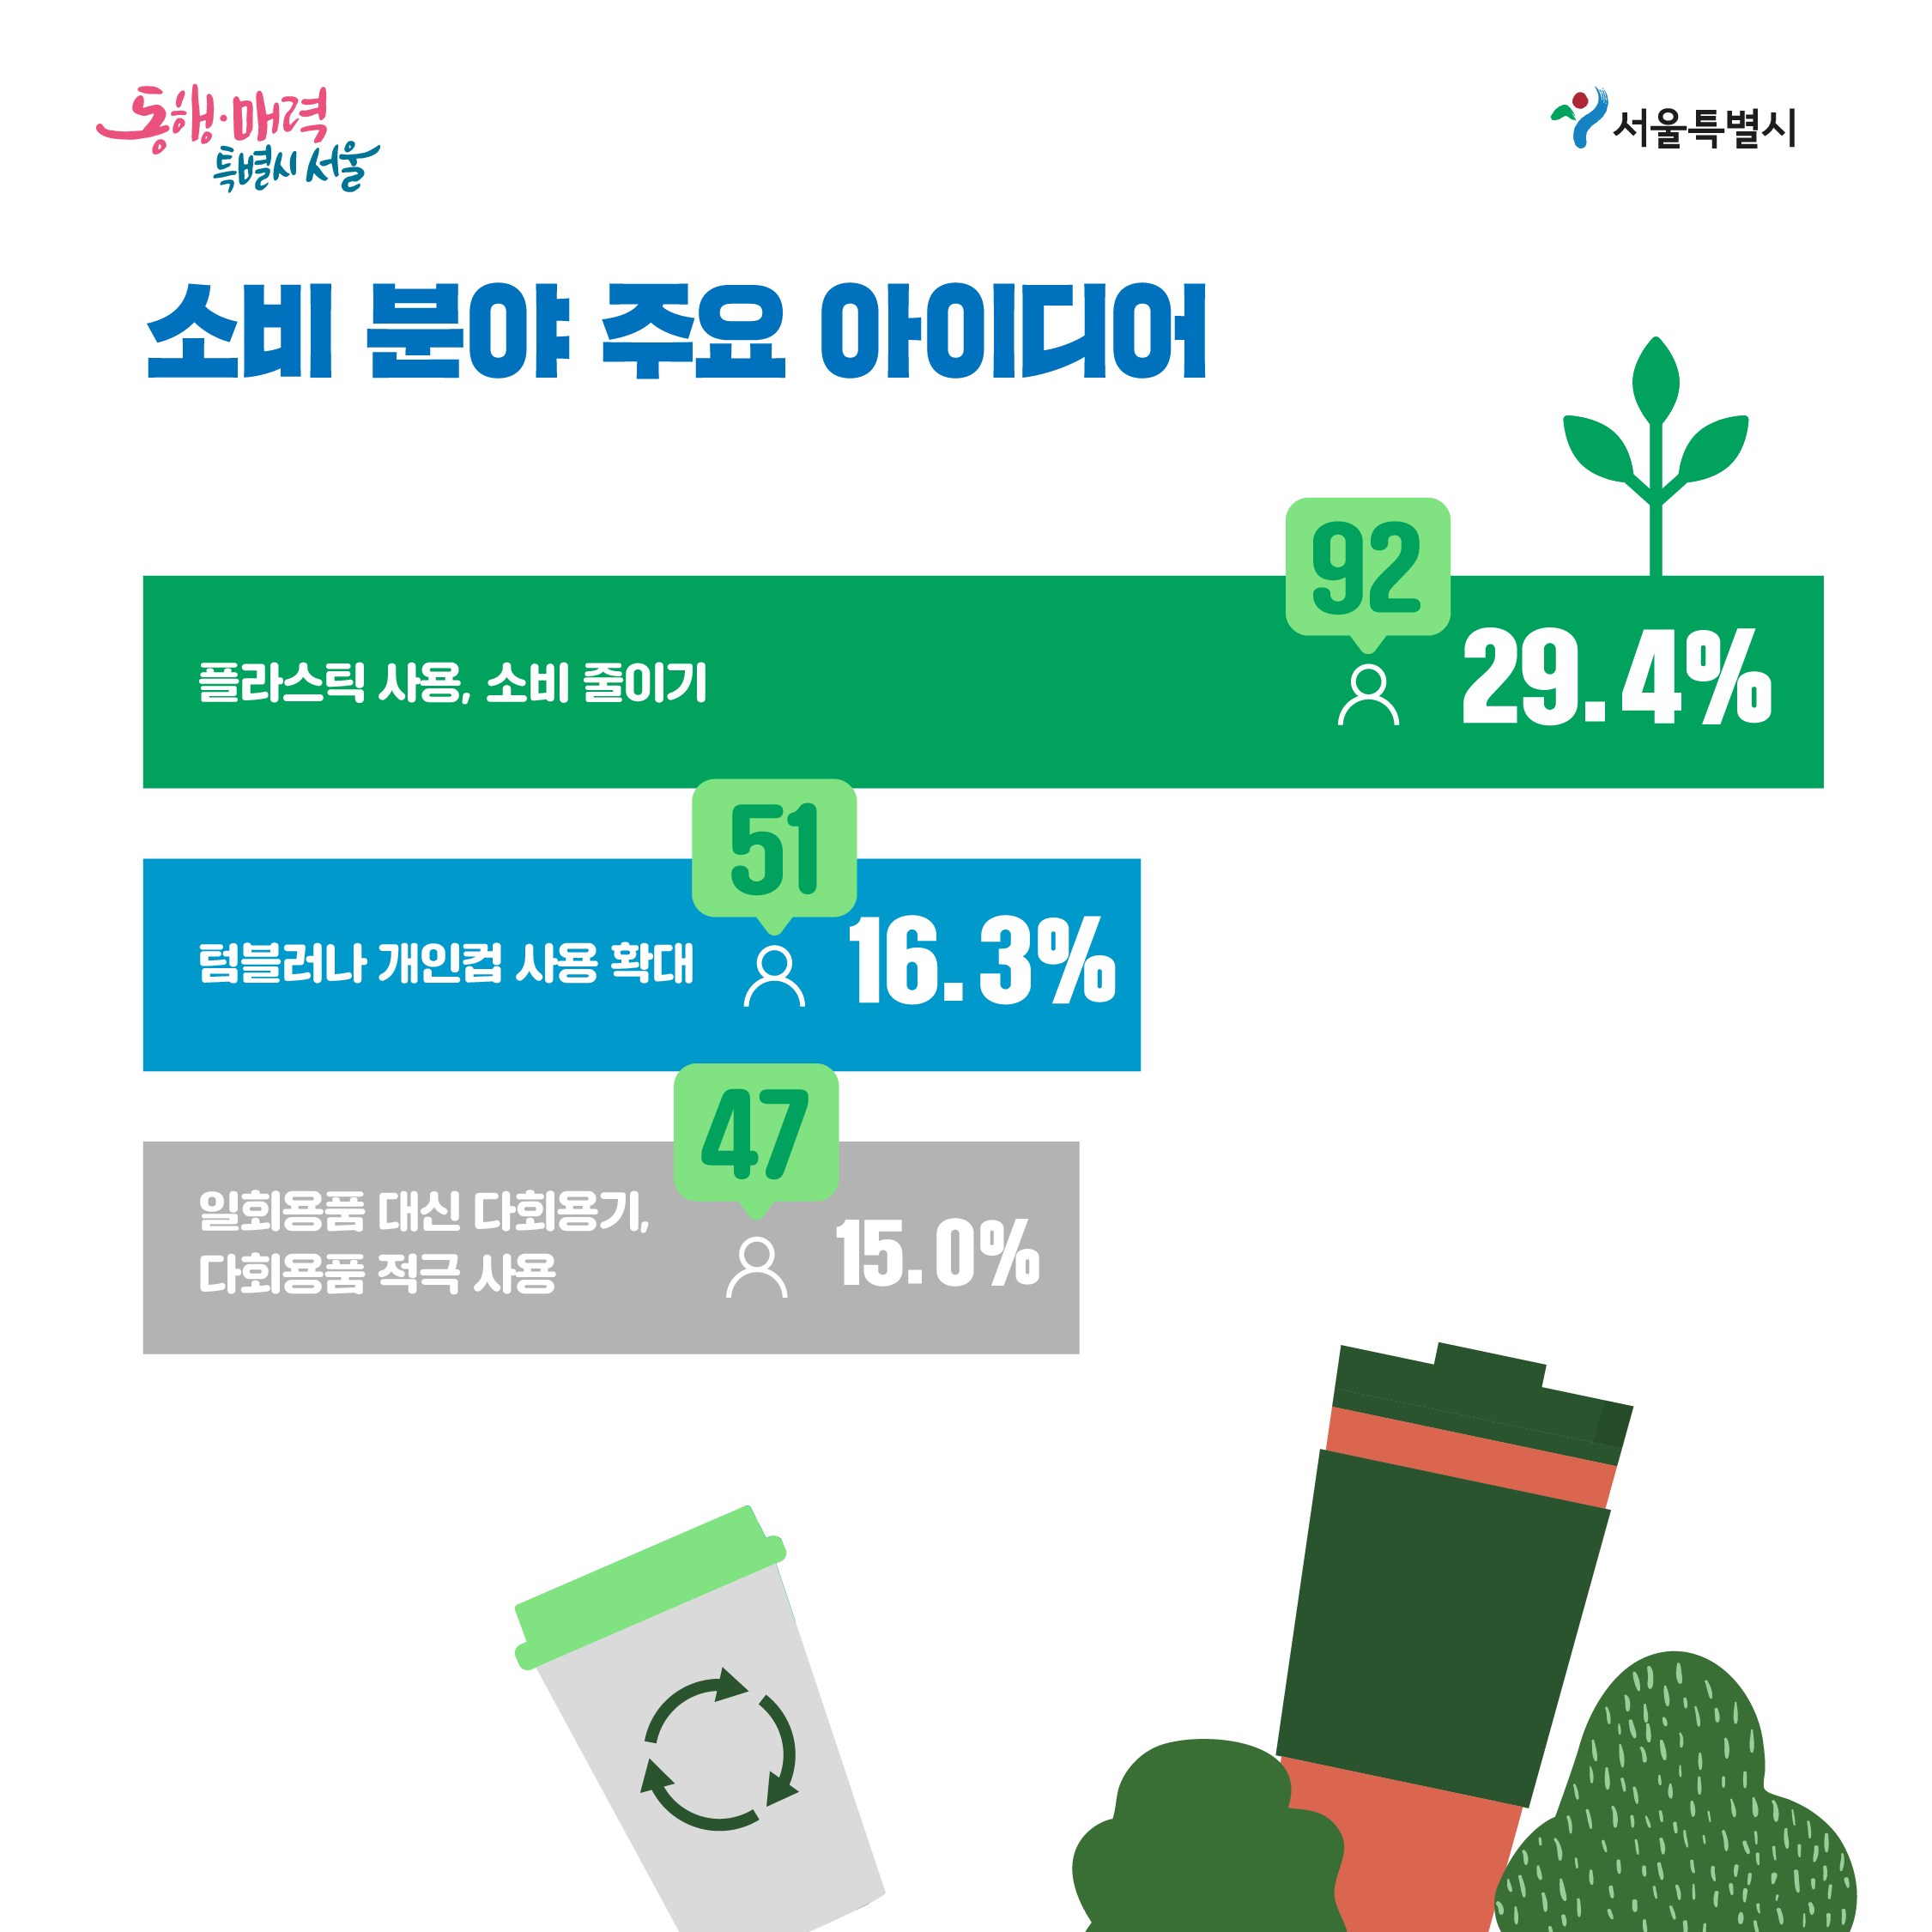 소비 분야 주용 아이디어 1.플라스틱 사용,소비 줄이기(92,29.4%),2.텀블러나 개인컵 사용확대(51,16.3%)3.일회용품 대신 다회용기,다회용품 적극 사용(47,15.0%)